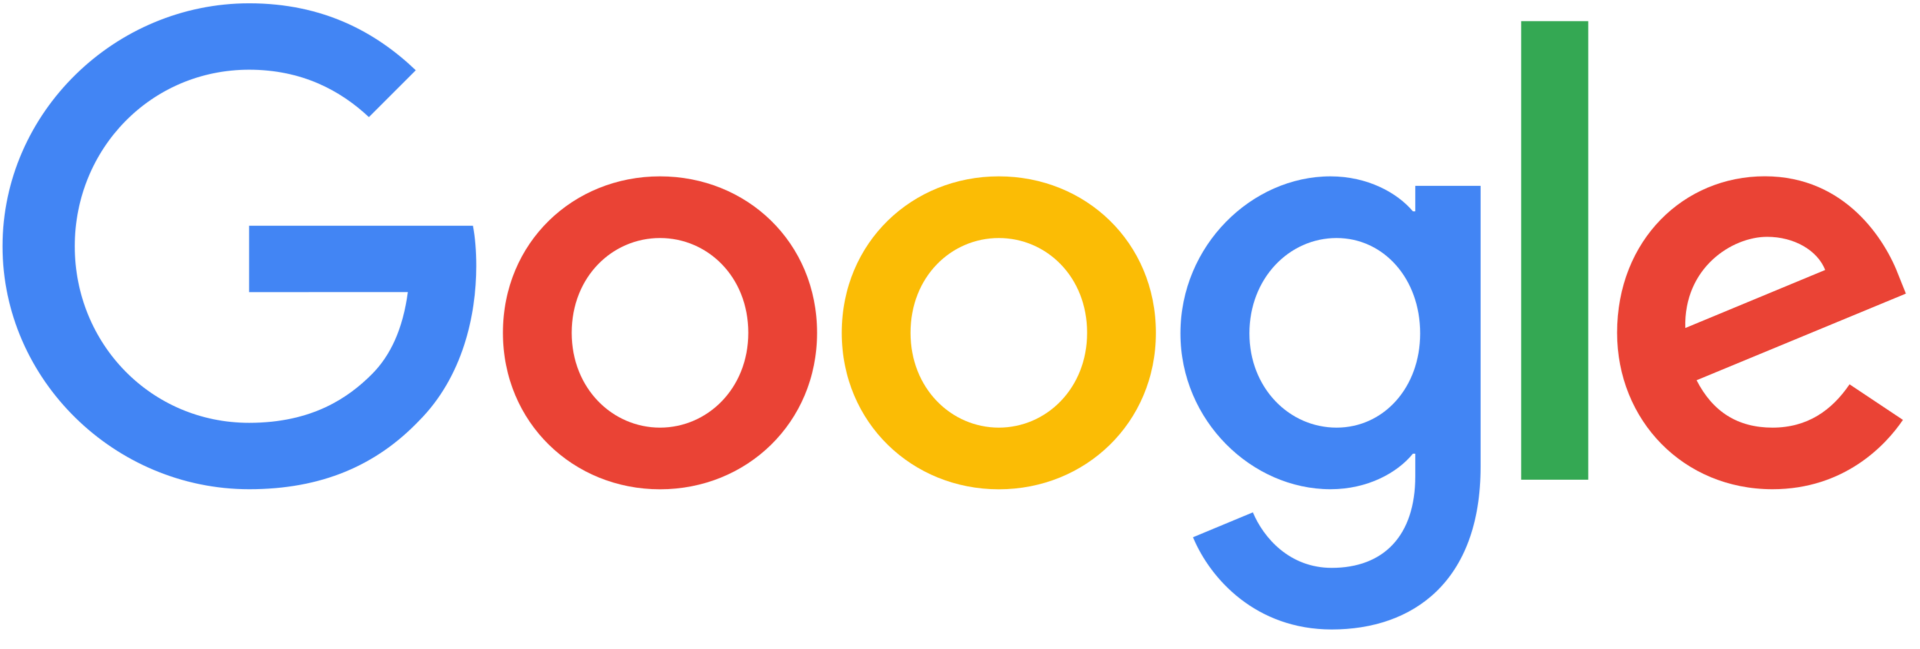 Googleのロゴ。